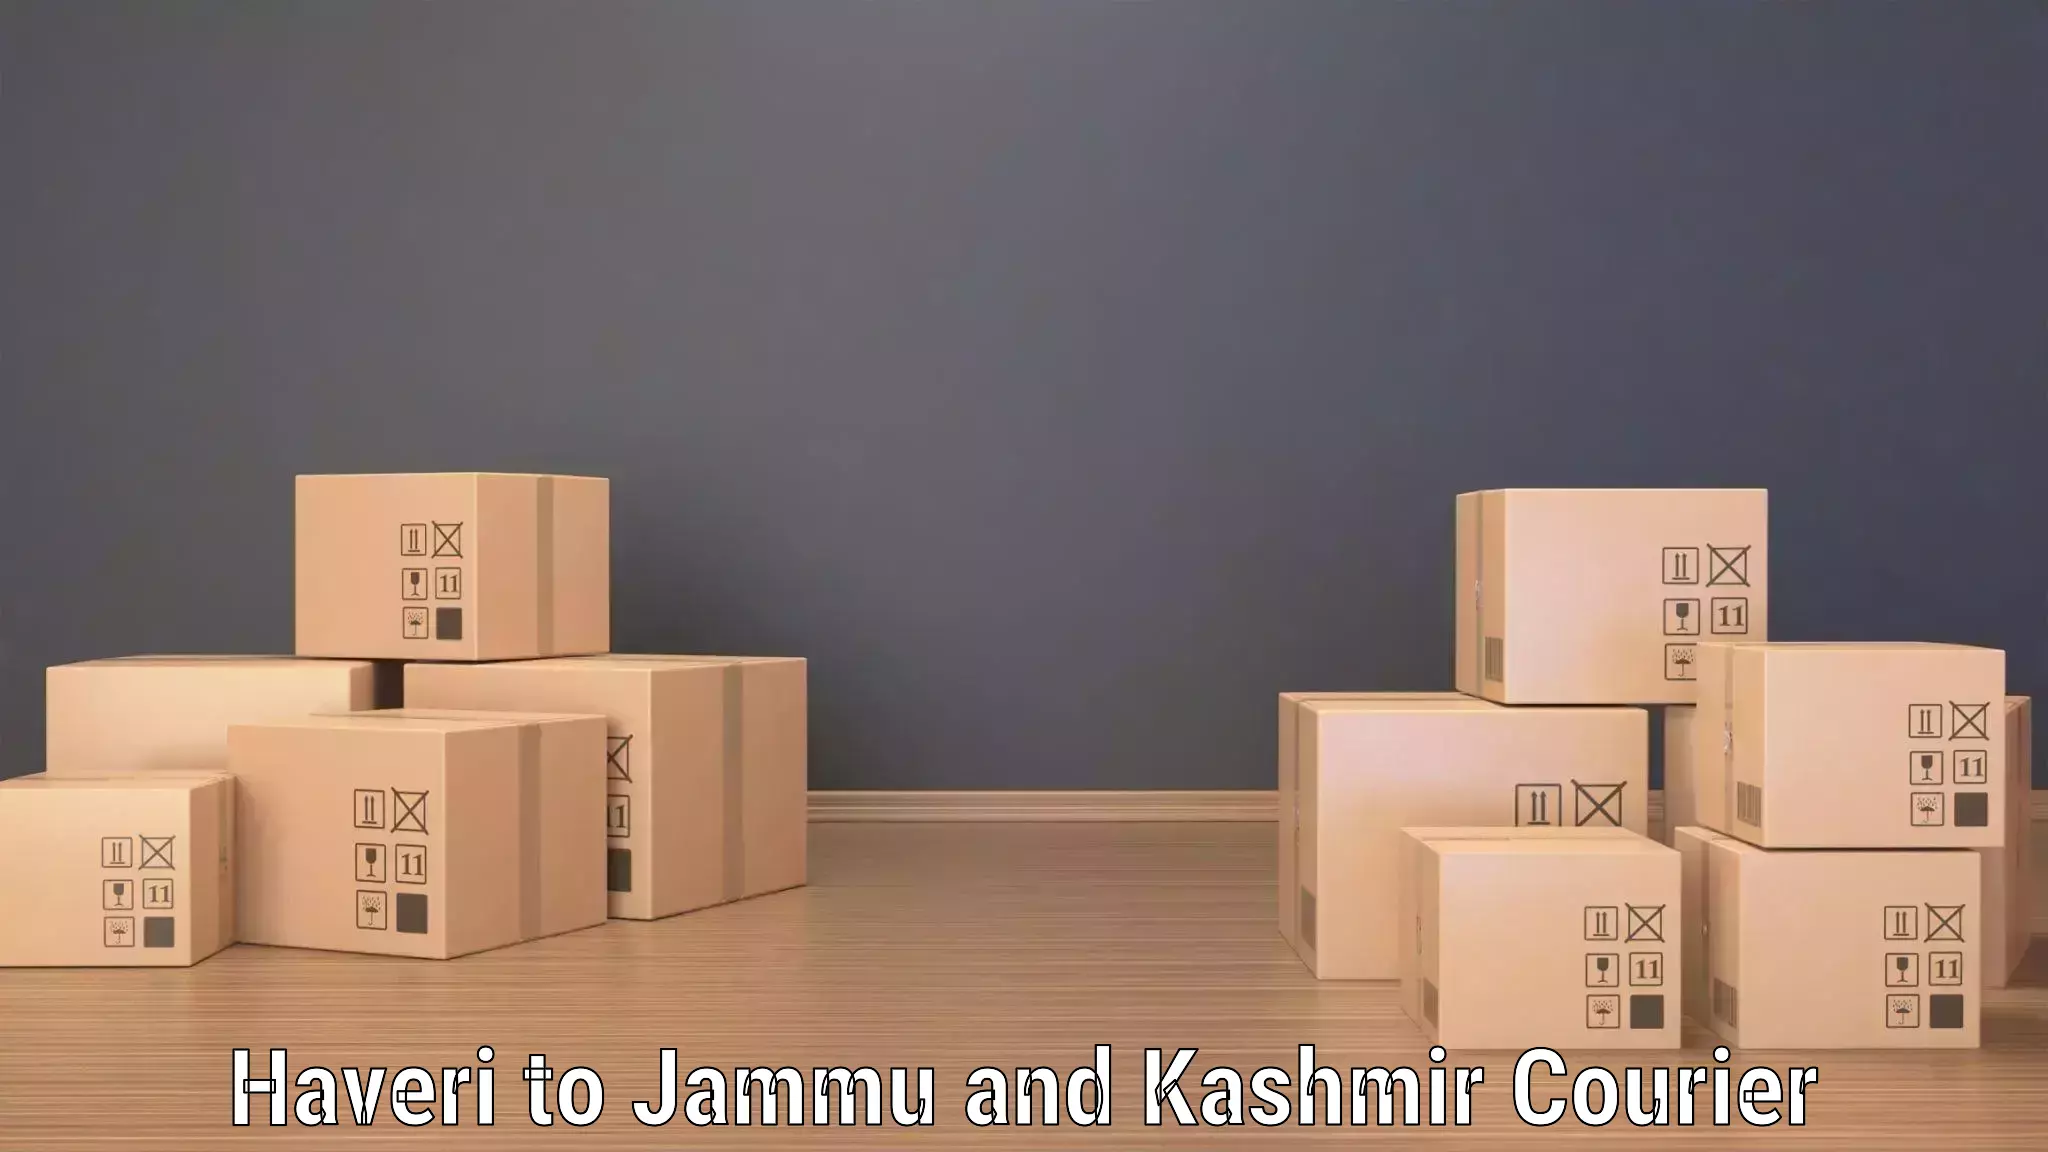 Cash on delivery service Haveri to Srinagar Kashmir